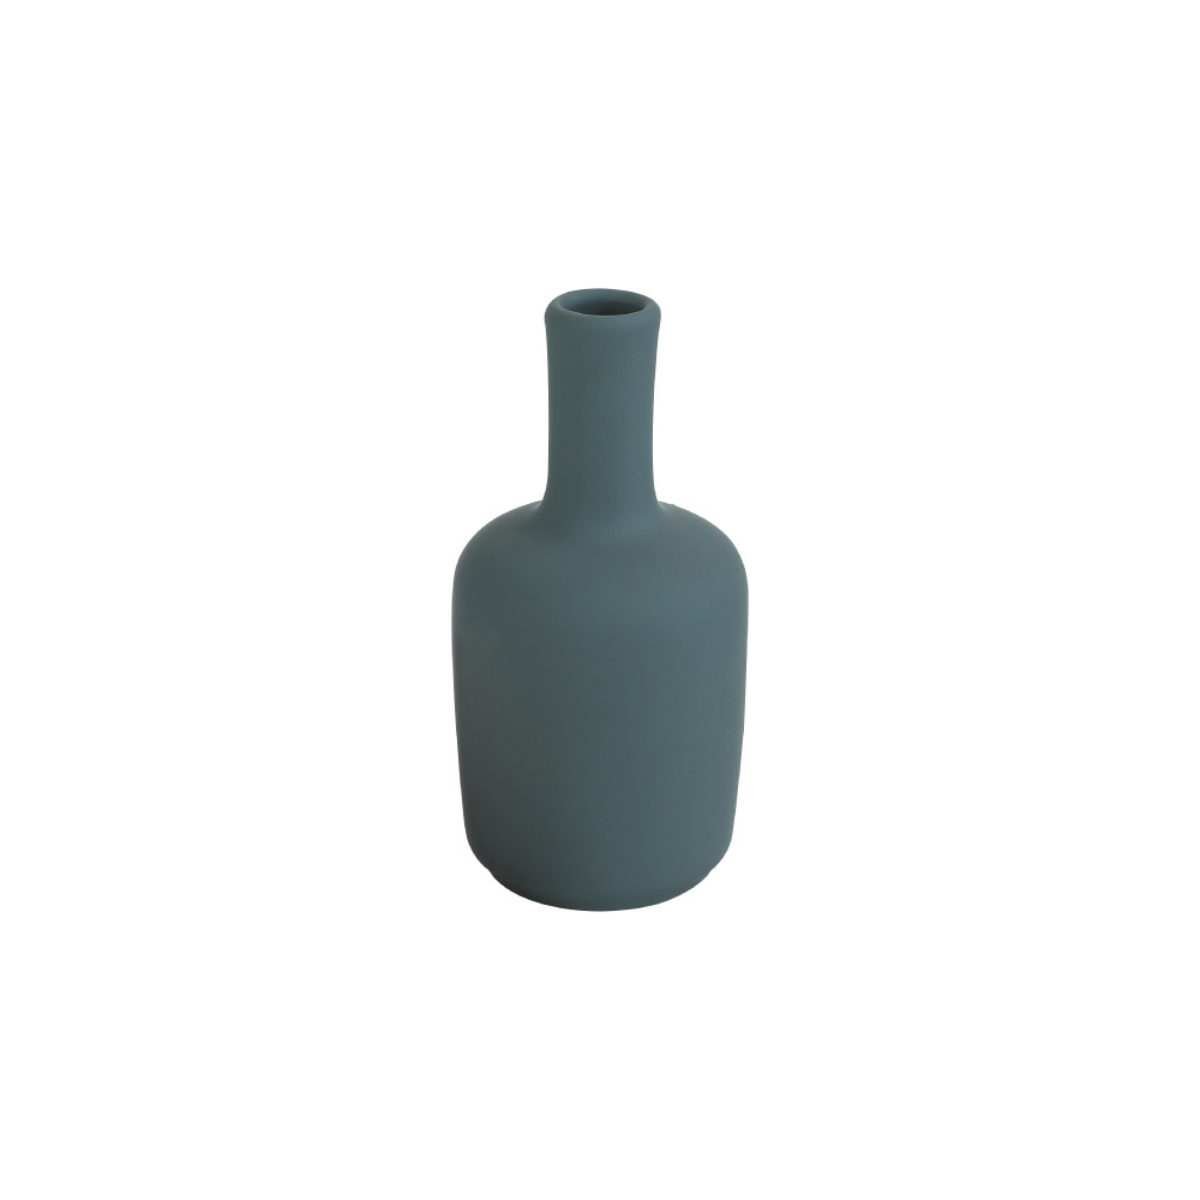 Ceramic Vase / セラミックベース